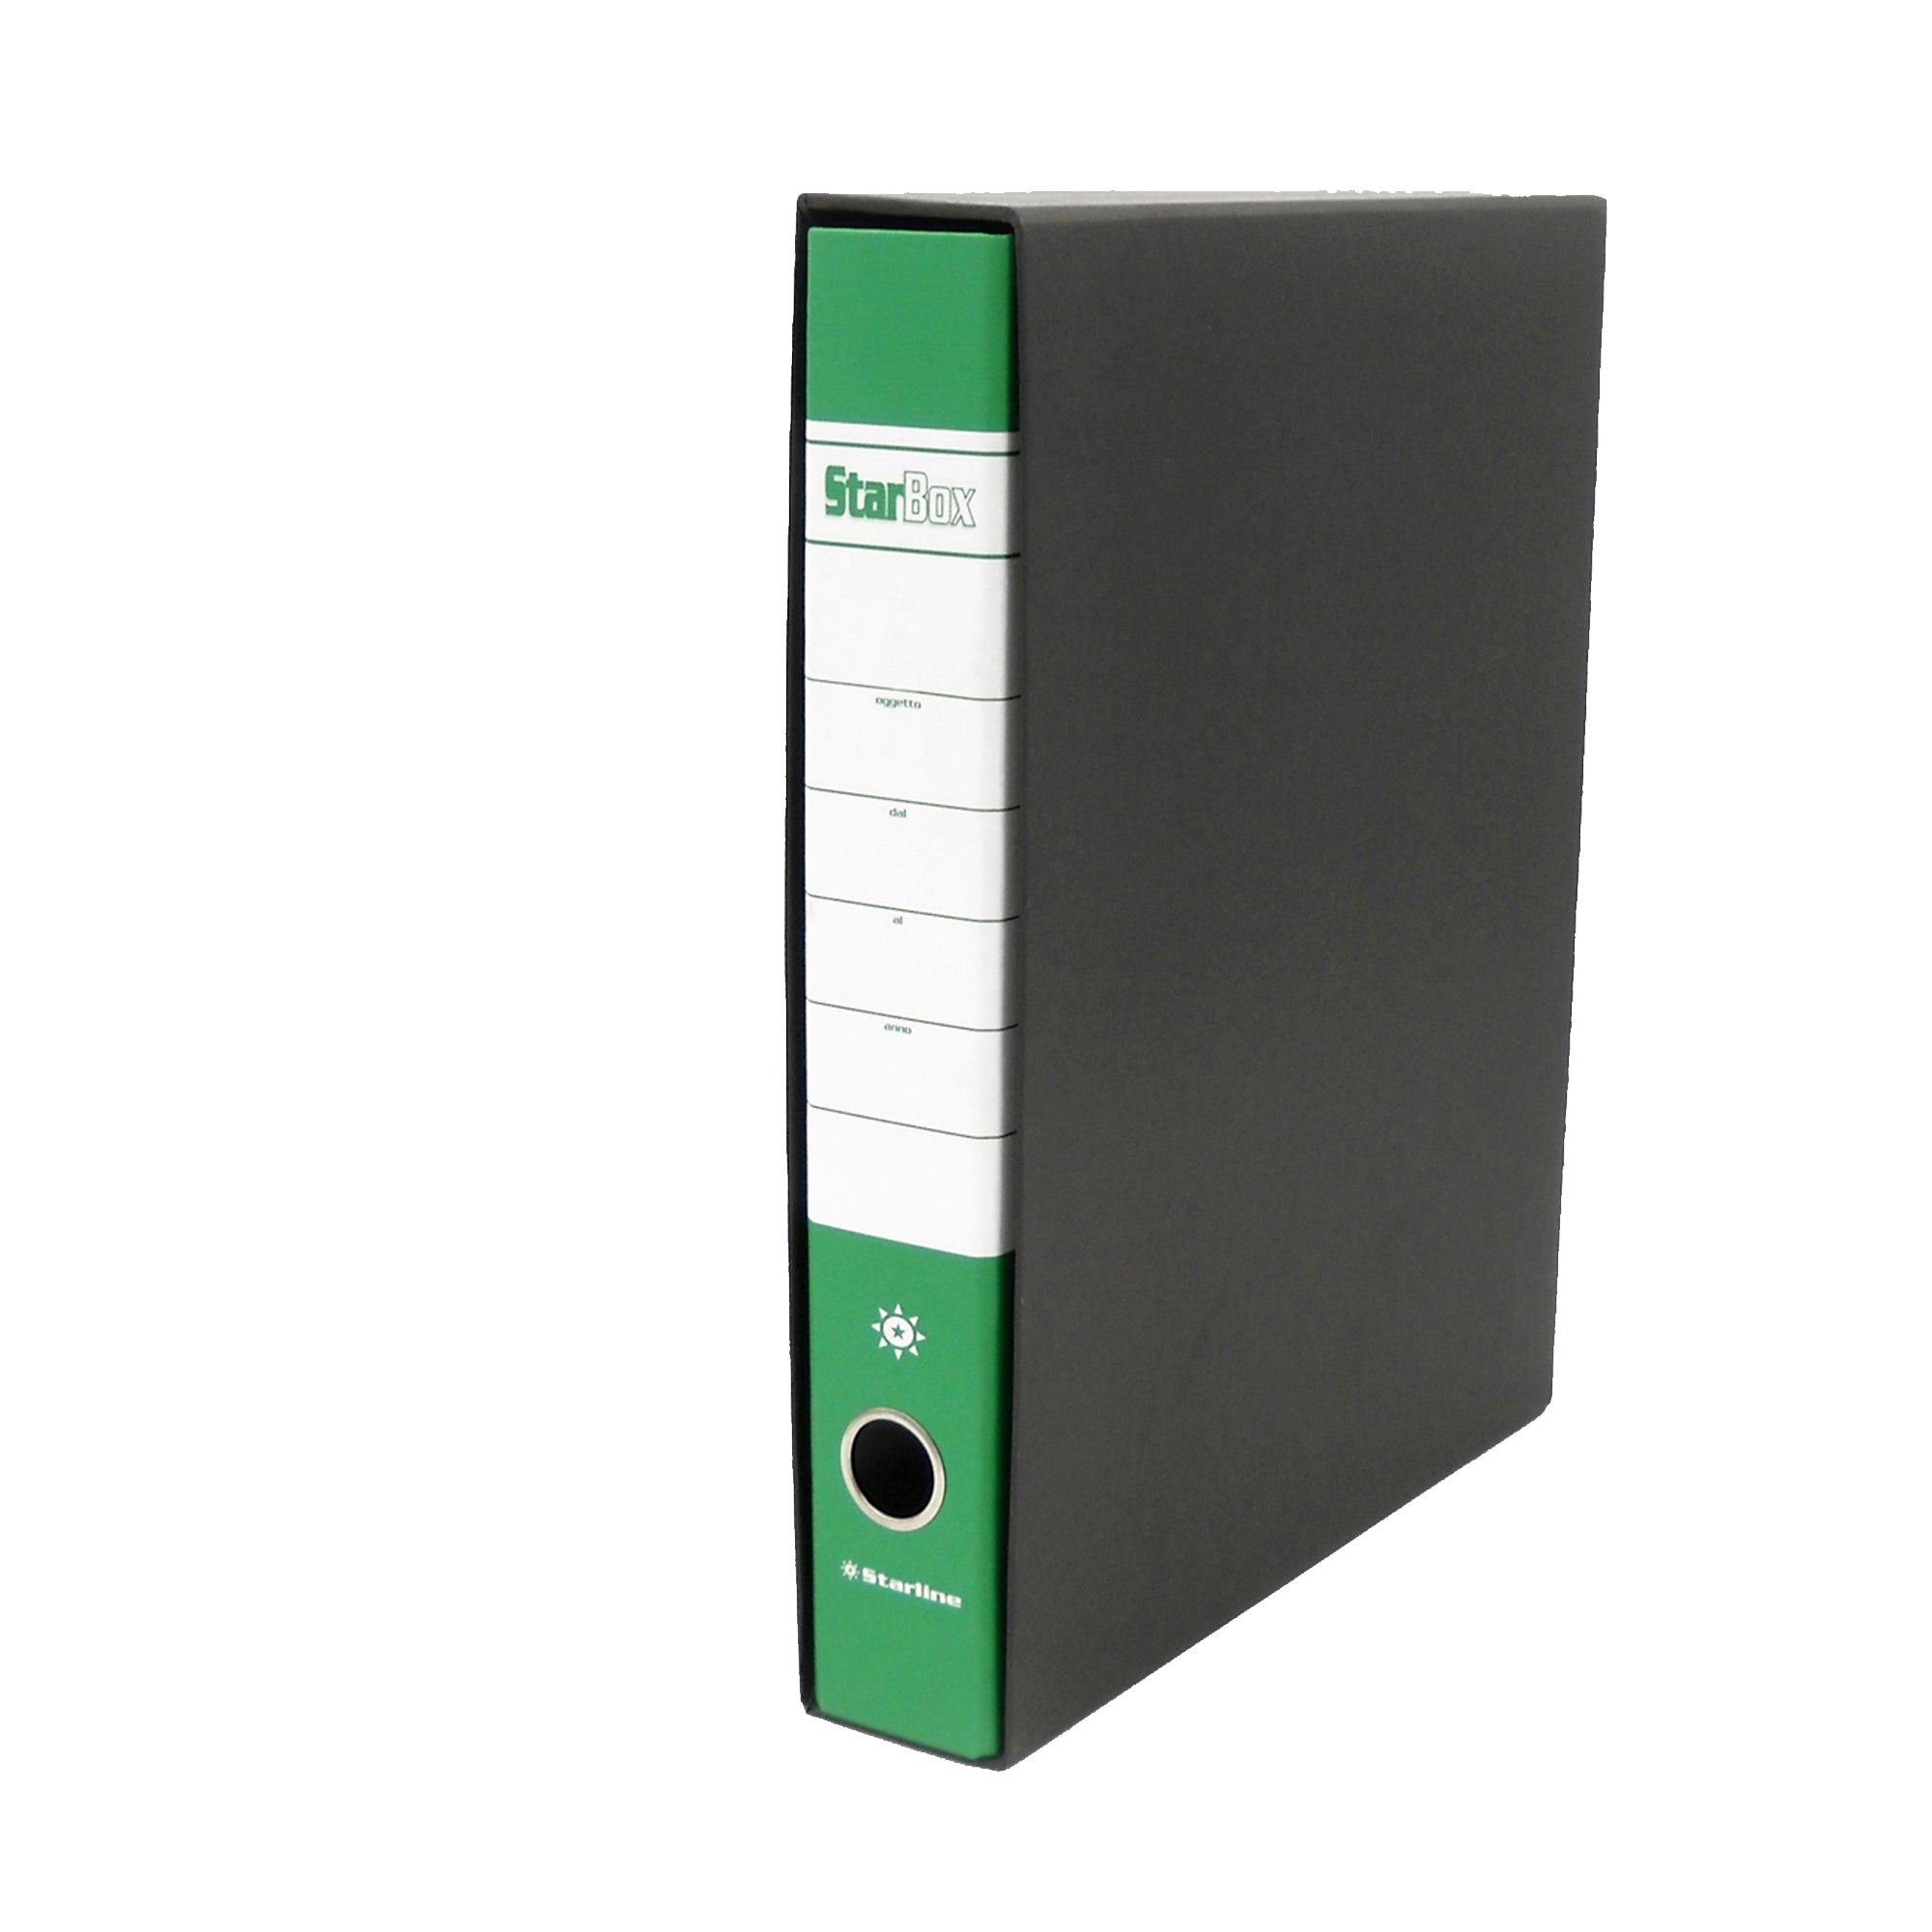 starline-registratore-starbox-f-to-protocollo-dorso-5cm-verde